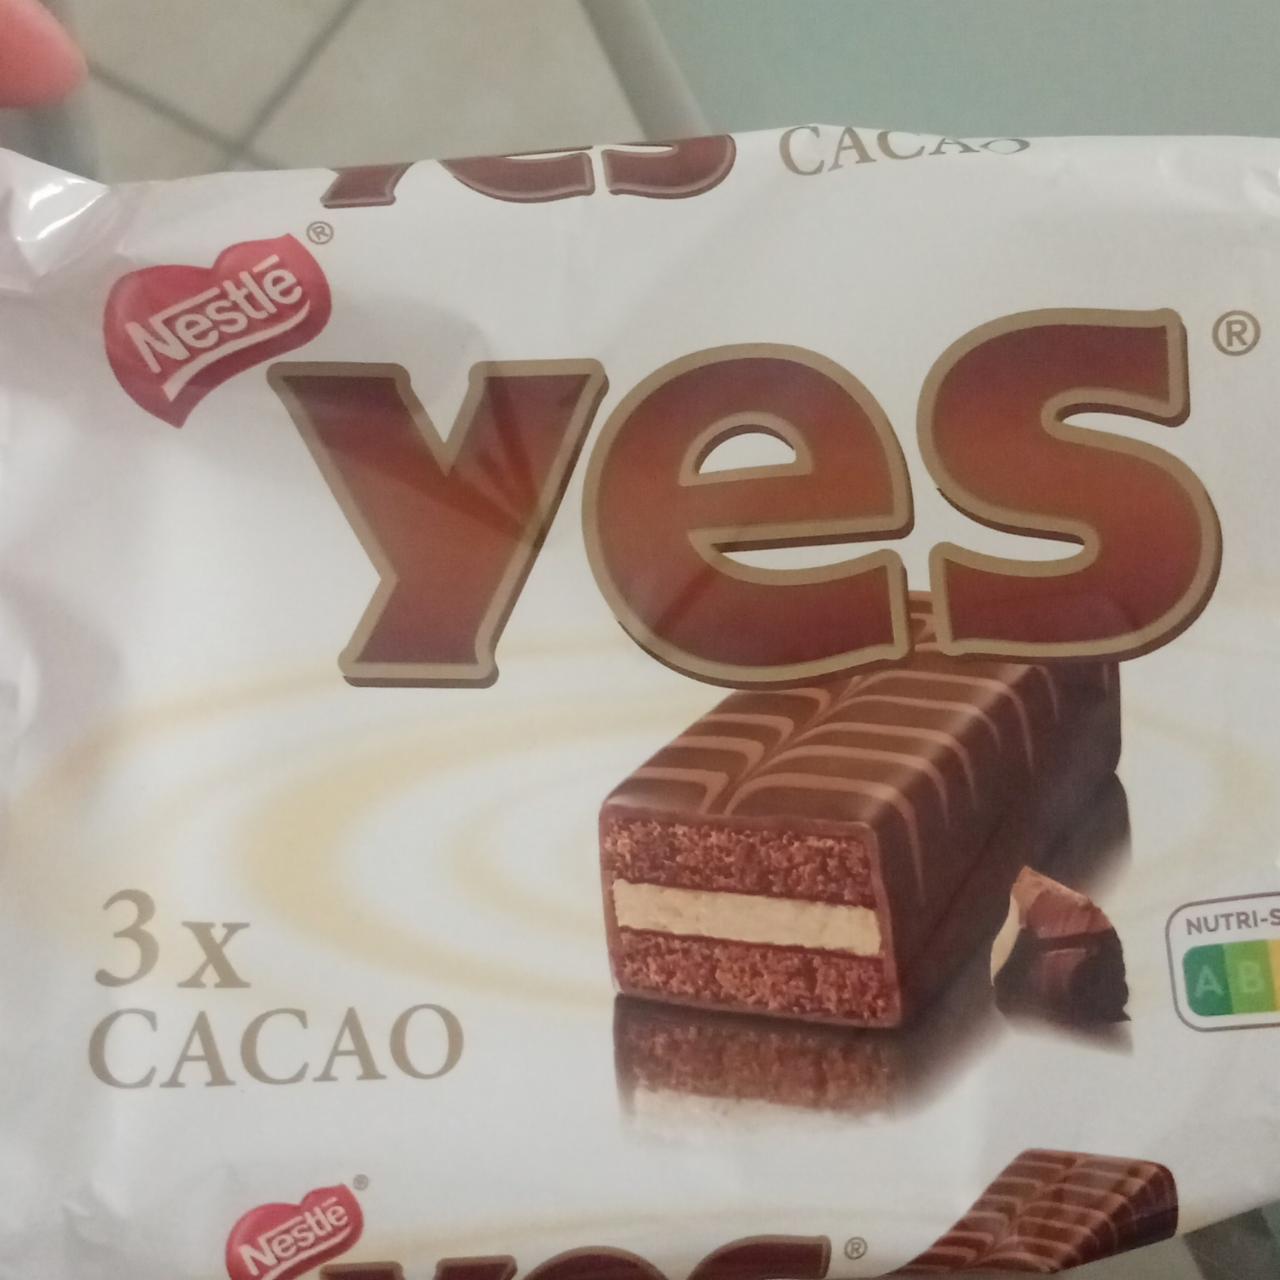 Фото - Бисквит Yes cacao 3x Nestlé